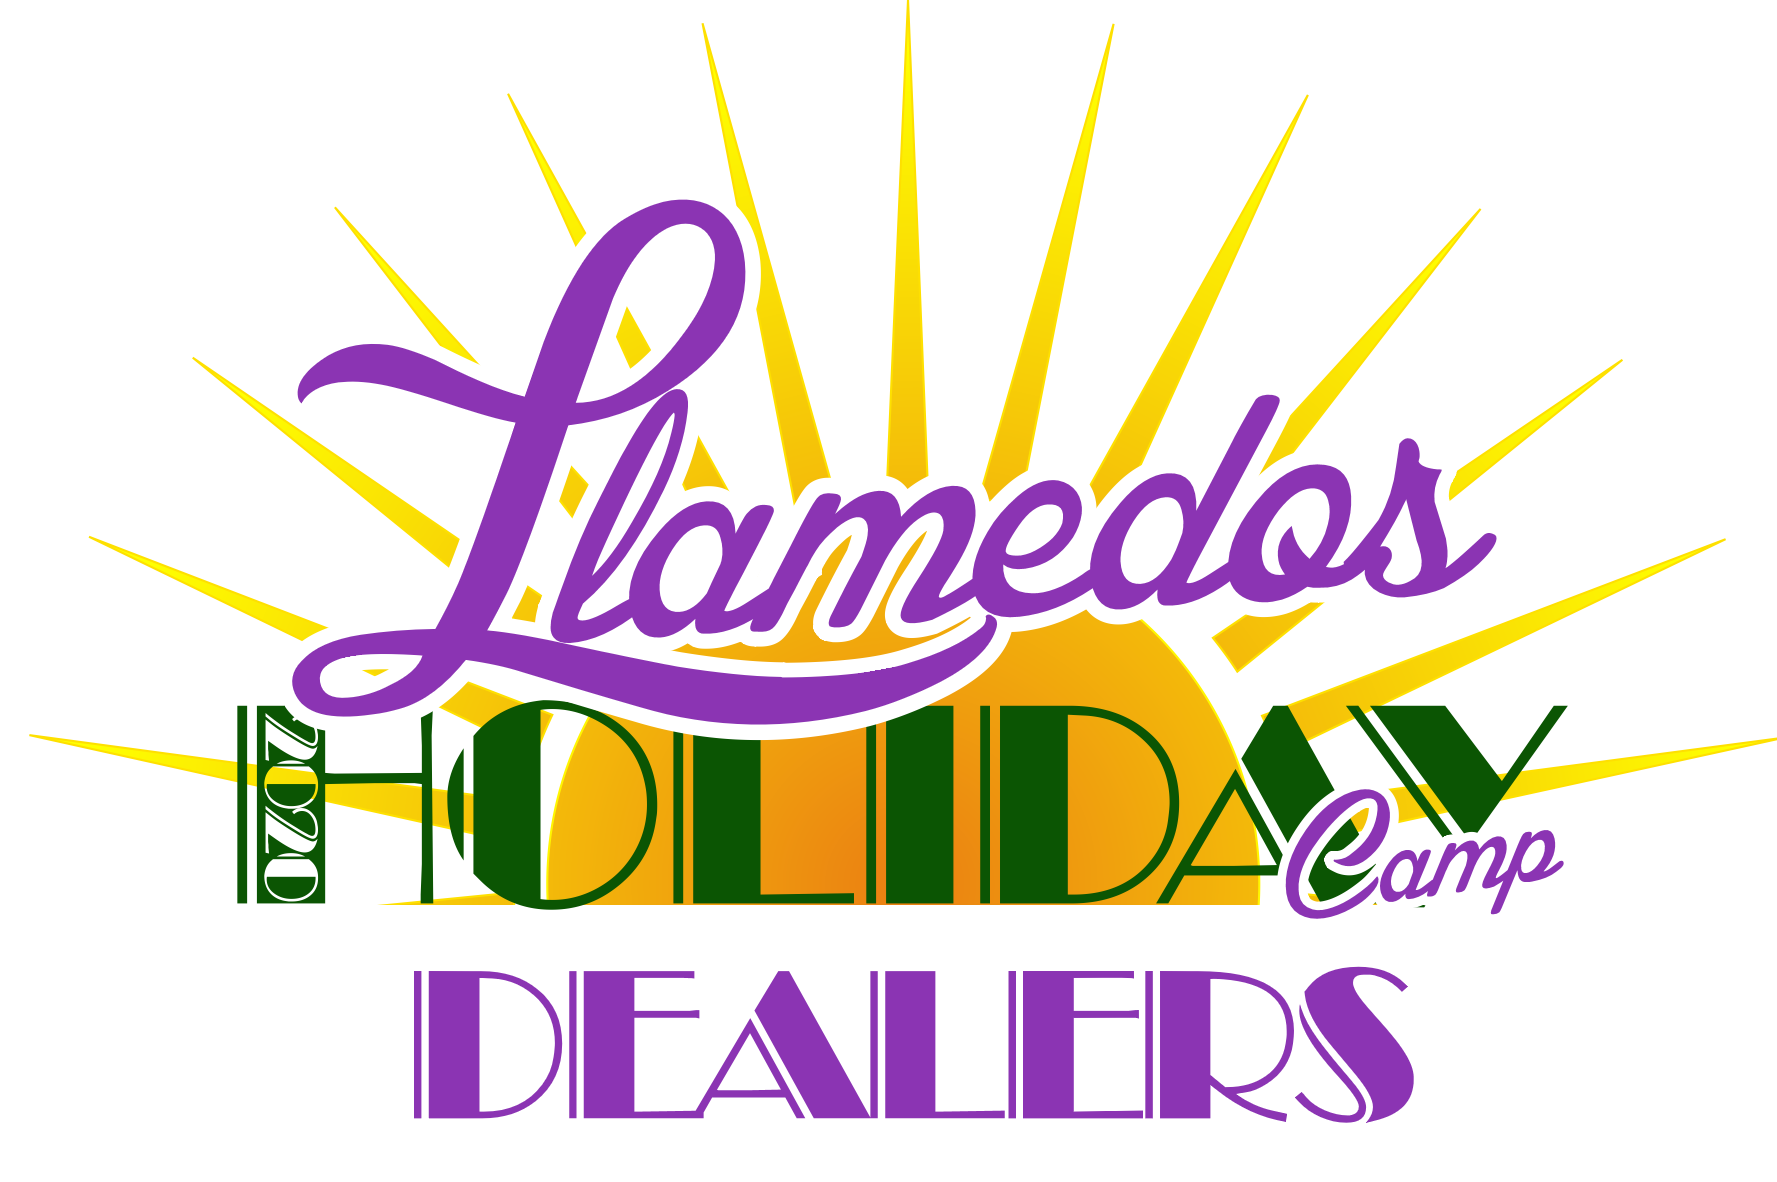 Llamedos Holiday Camp Dealers